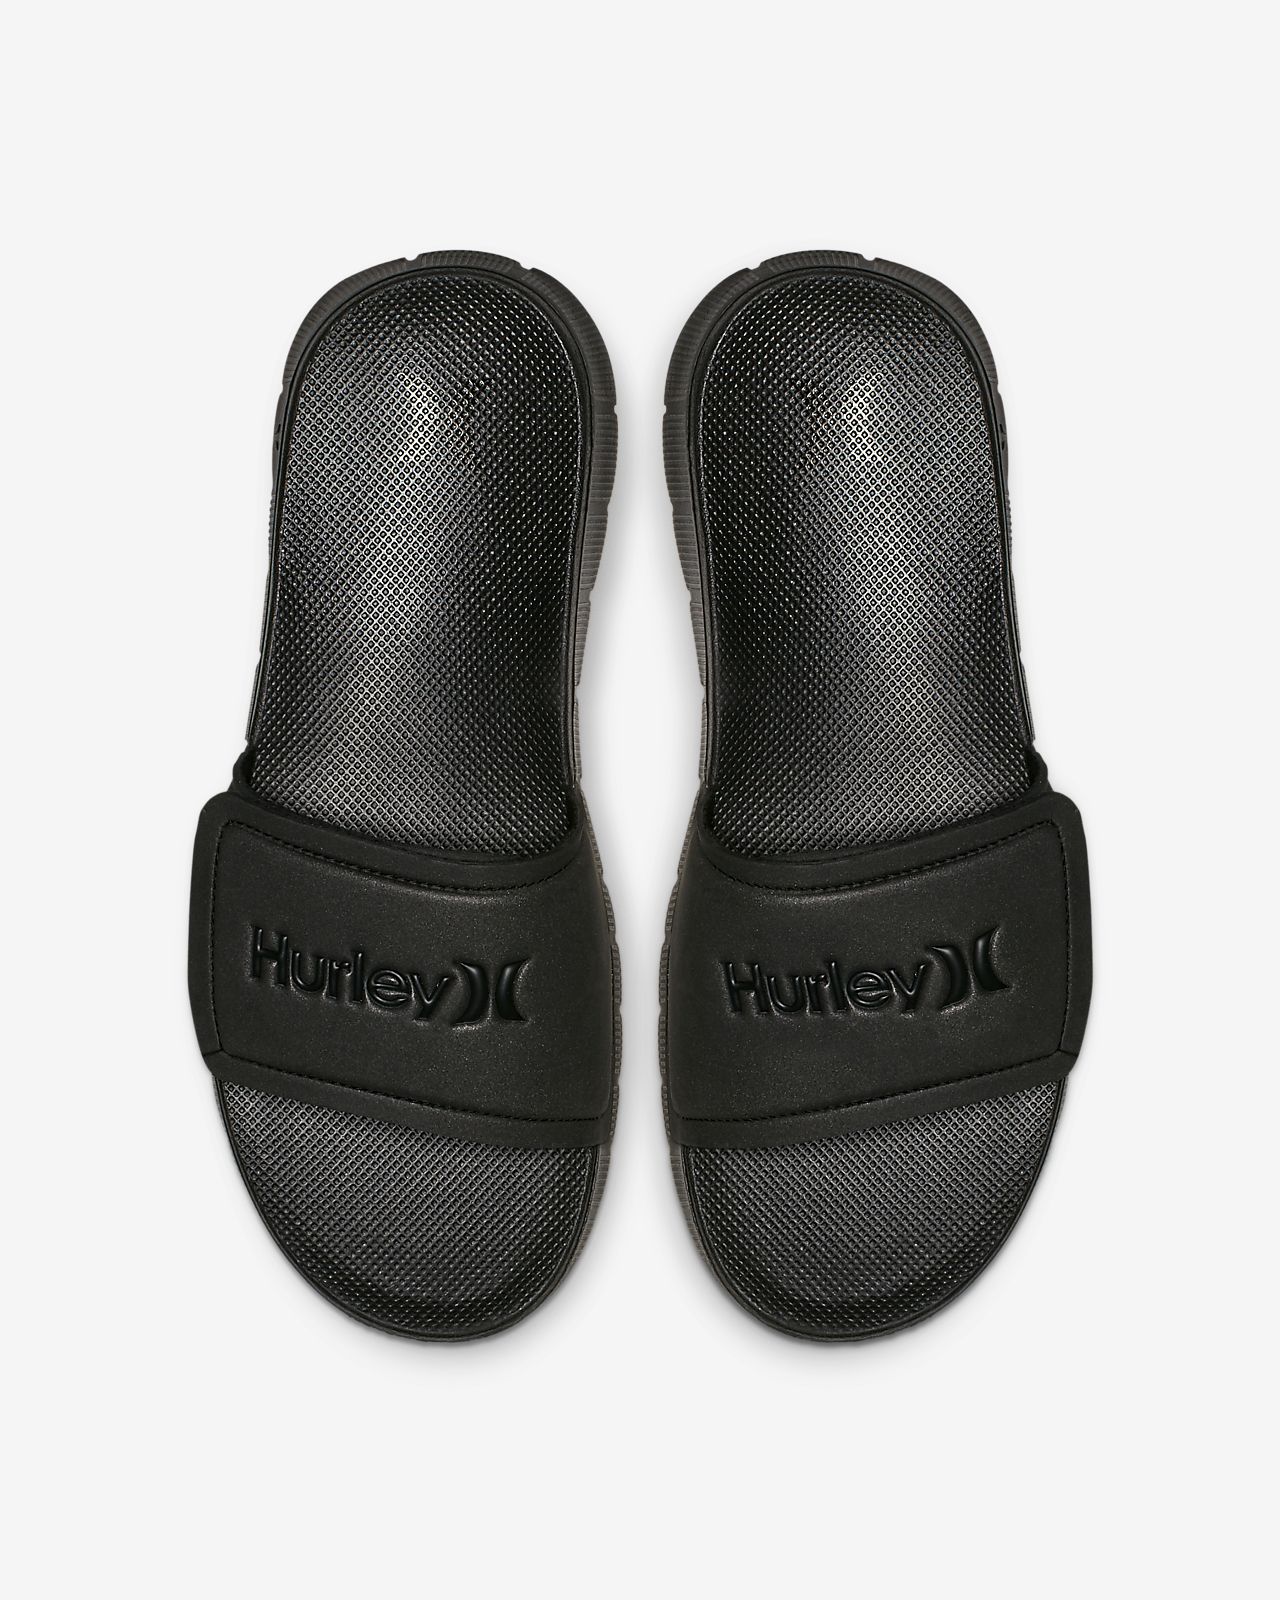 hurley fusion sandal